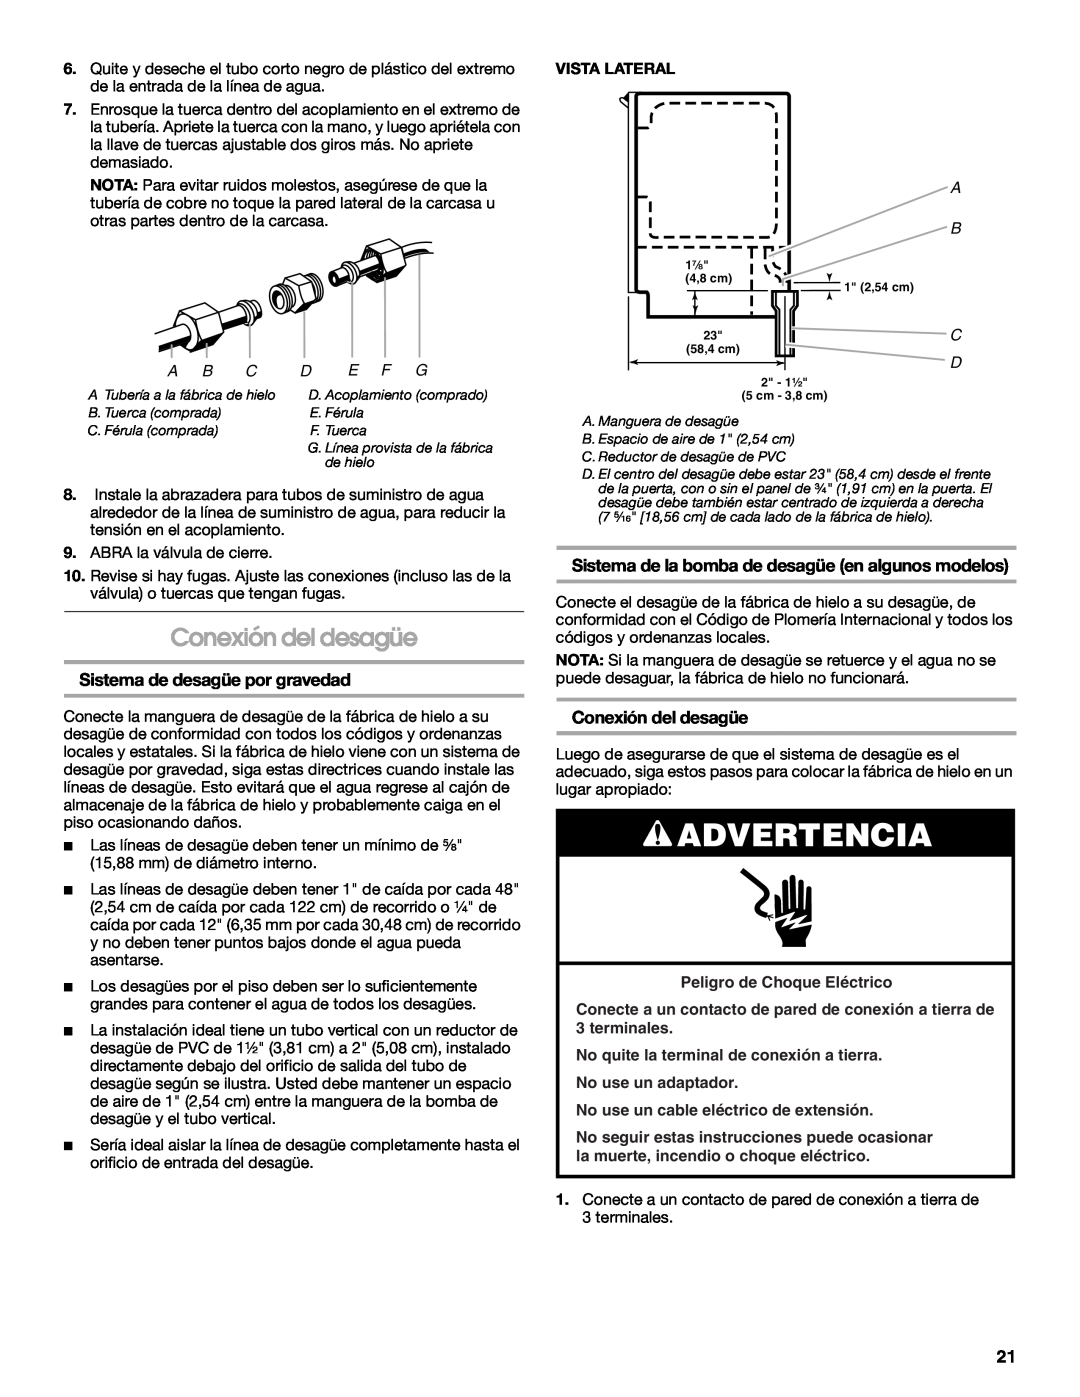 Jenn-Air W10136129C manual Conexión del desagüe, Sistema de desagüe por gravedad, Advertencia, Peligro de Choque Eléctrico 